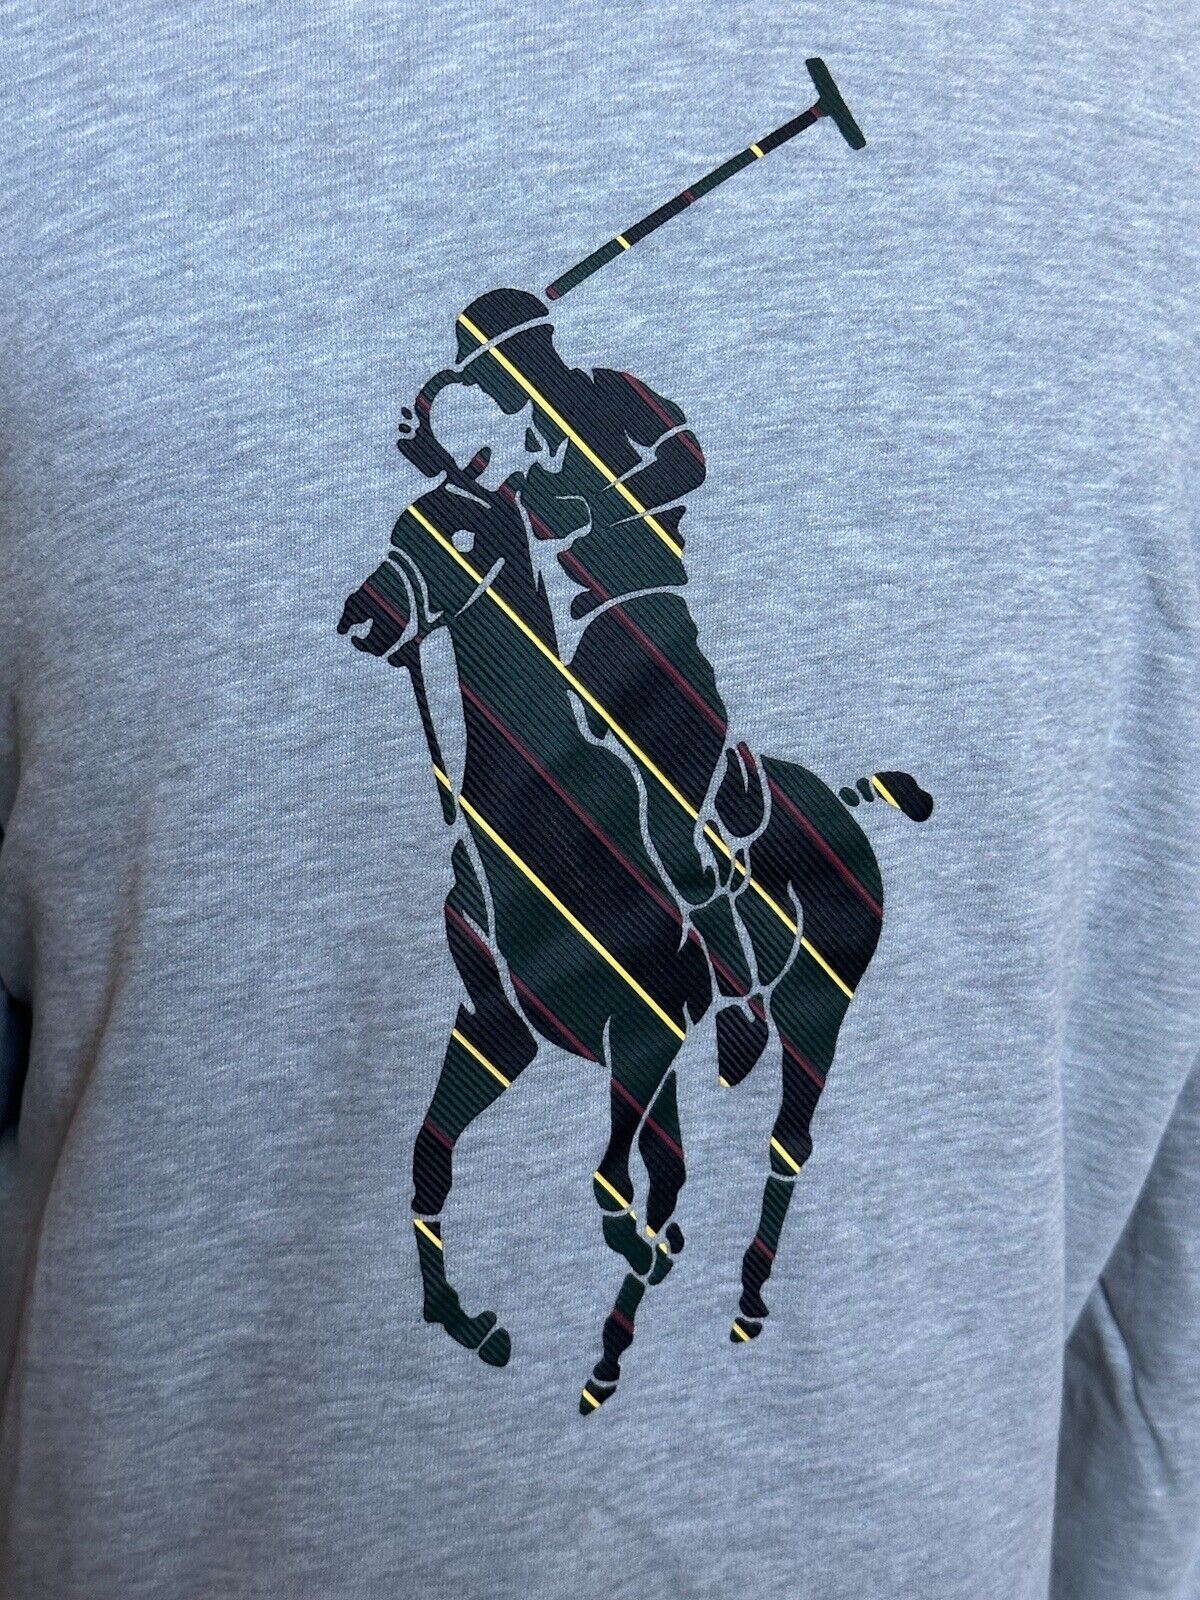 NWT $138 Polo Ralph Lauren Polo Logo Fleece Sweatshirt Gray XL/TG